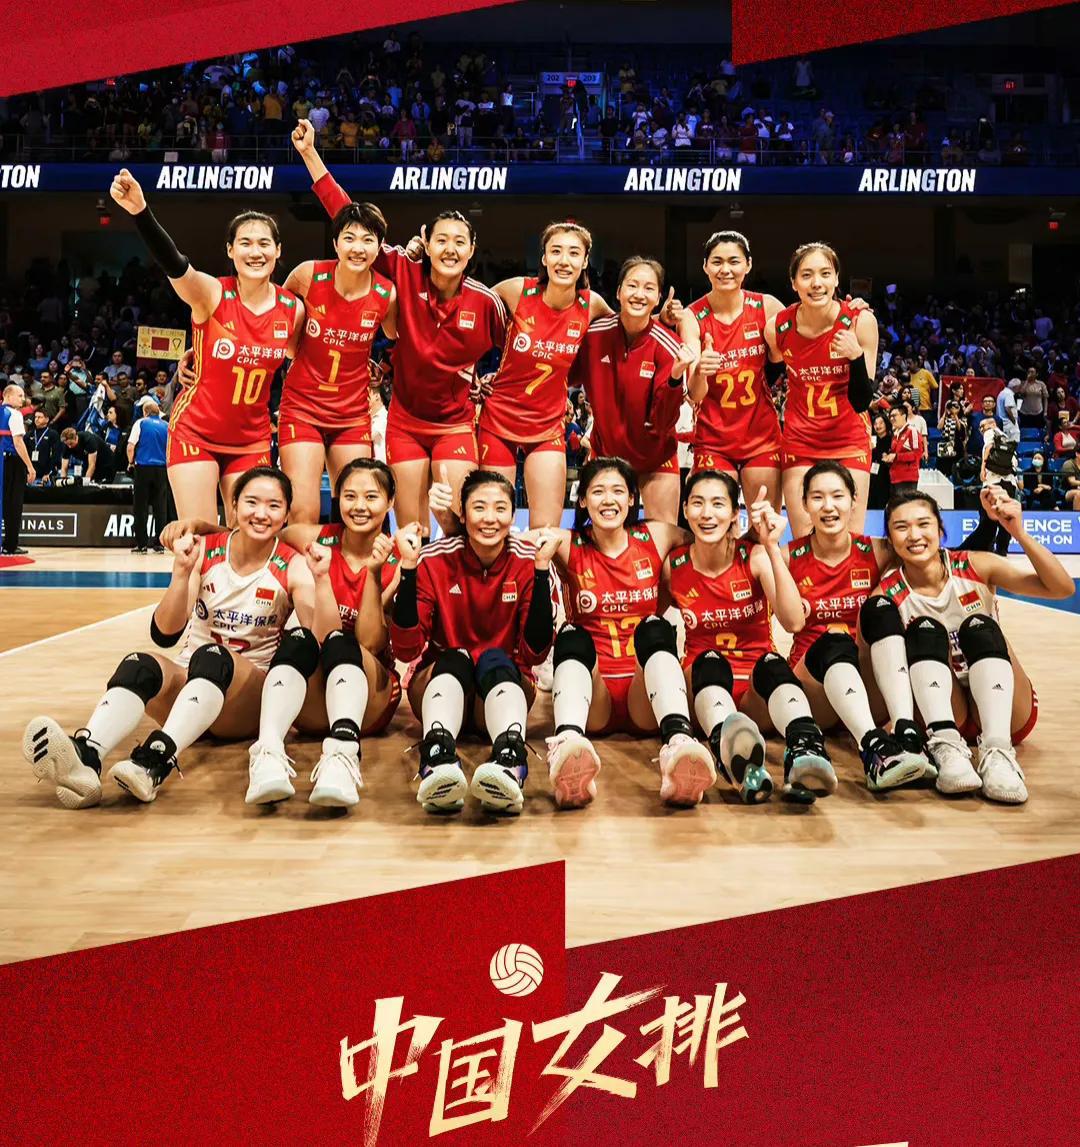 中国女排3:1巴西，强势进入四强，剧情开始清晰了

半决赛
中国3:0 波兰  (1)